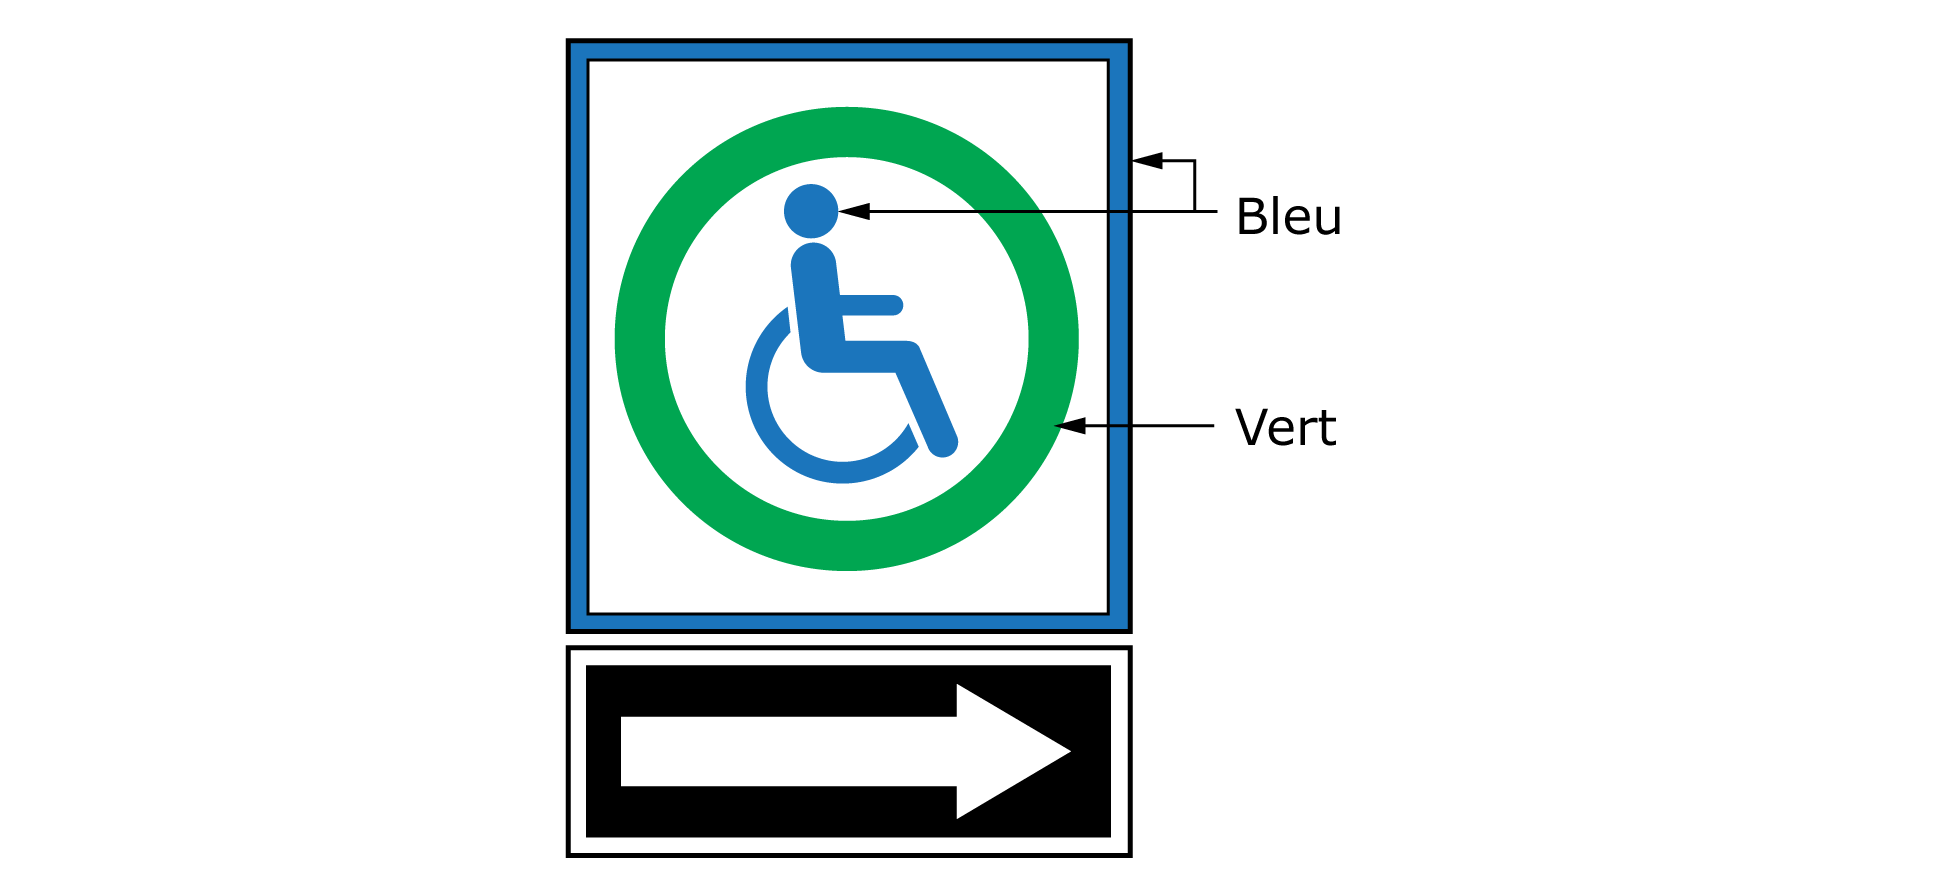 Cet exemple est un panneau de direction vers des places de stationnement. Sur ce panneau est représenté un carré bleu avec un cercle vert entourant une illustration bleue d’une personne en fauteuil roulant. Le carré bleu est accompagné d’une flèche blanche sur fond noir directement en dessous. 